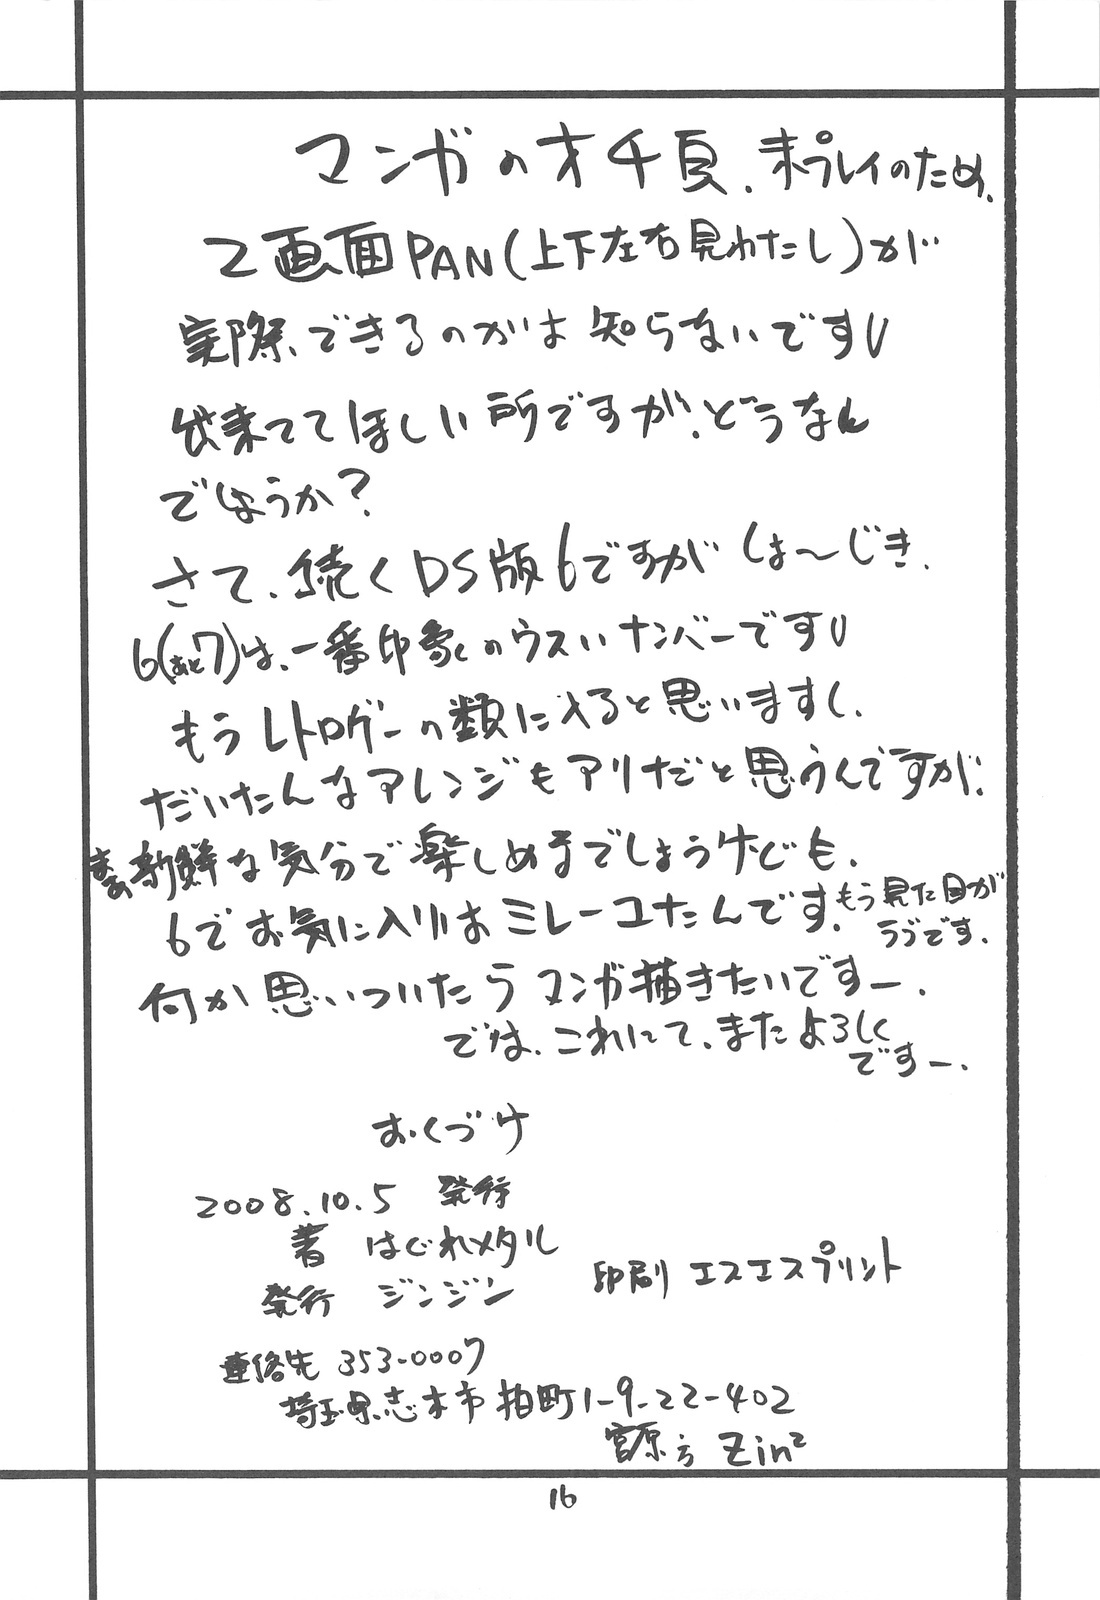 (SC41) [ZINZIN (Hagure Metal)] DRAGON REQUEST Vol. 11 (Dragon Quest V) page 15 full